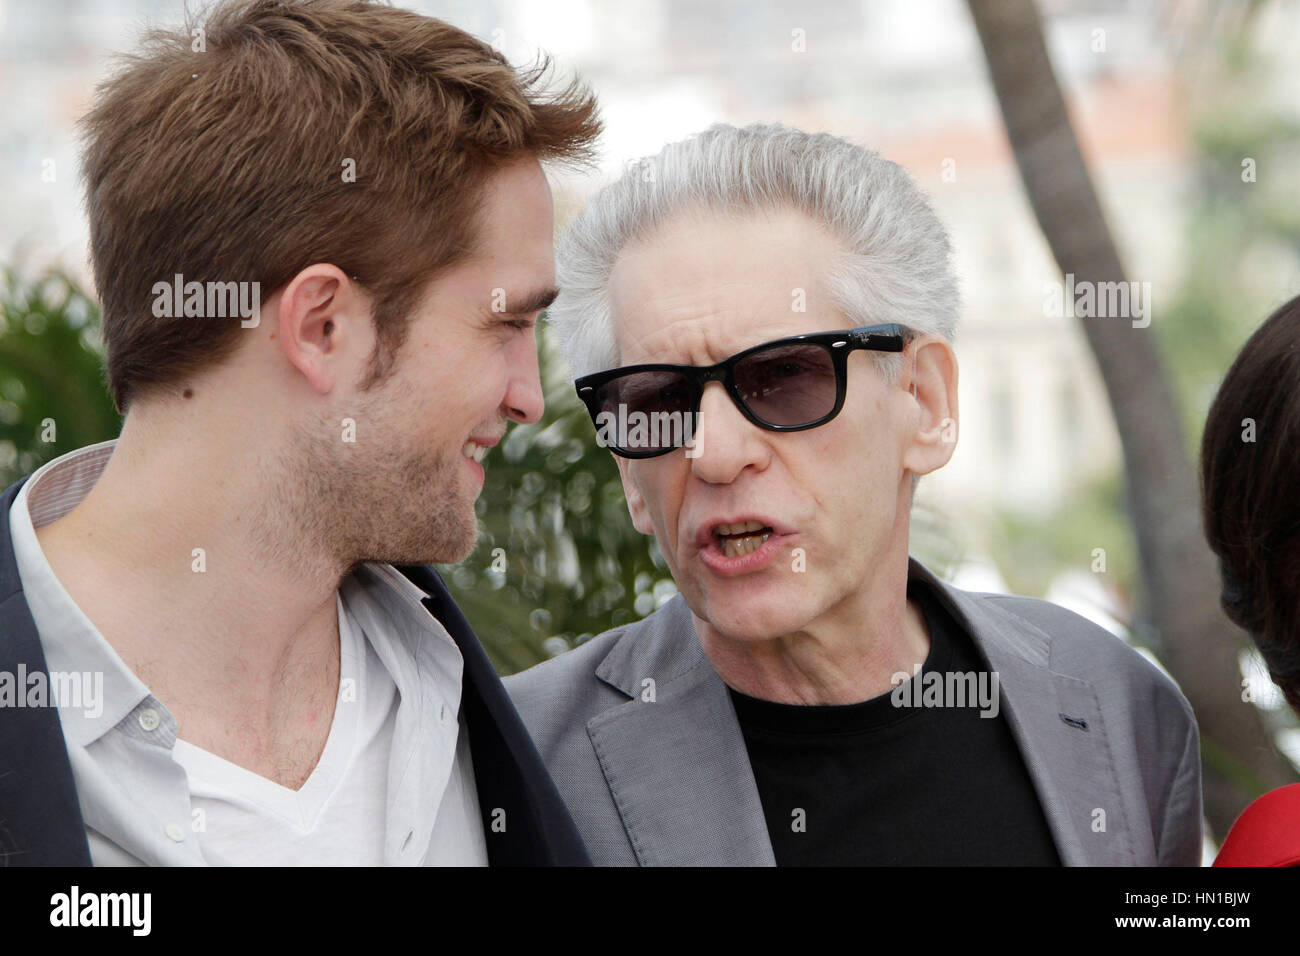 Robert Pattinson, à gauche, et le réalisateur David Cronenberg pose à la photo pour le film, "Cosmopolis" au 65e Festival de Cannes à Cannes, France le 25 mai 2012. Photo par Francis Specker Banque D'Images